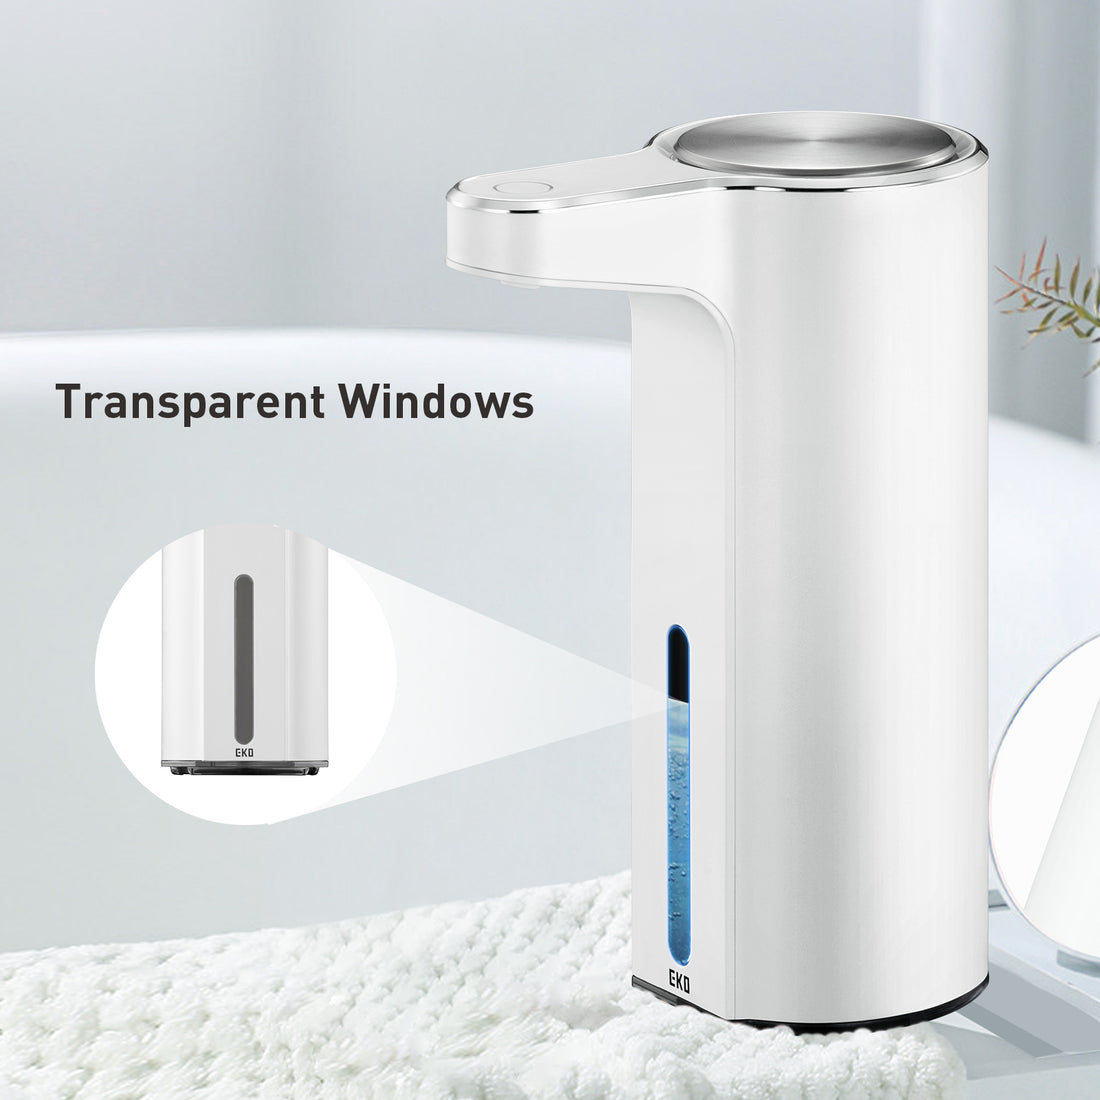 Aroma Smart Liquid Soap Dispenser - 9 fl oz (White)